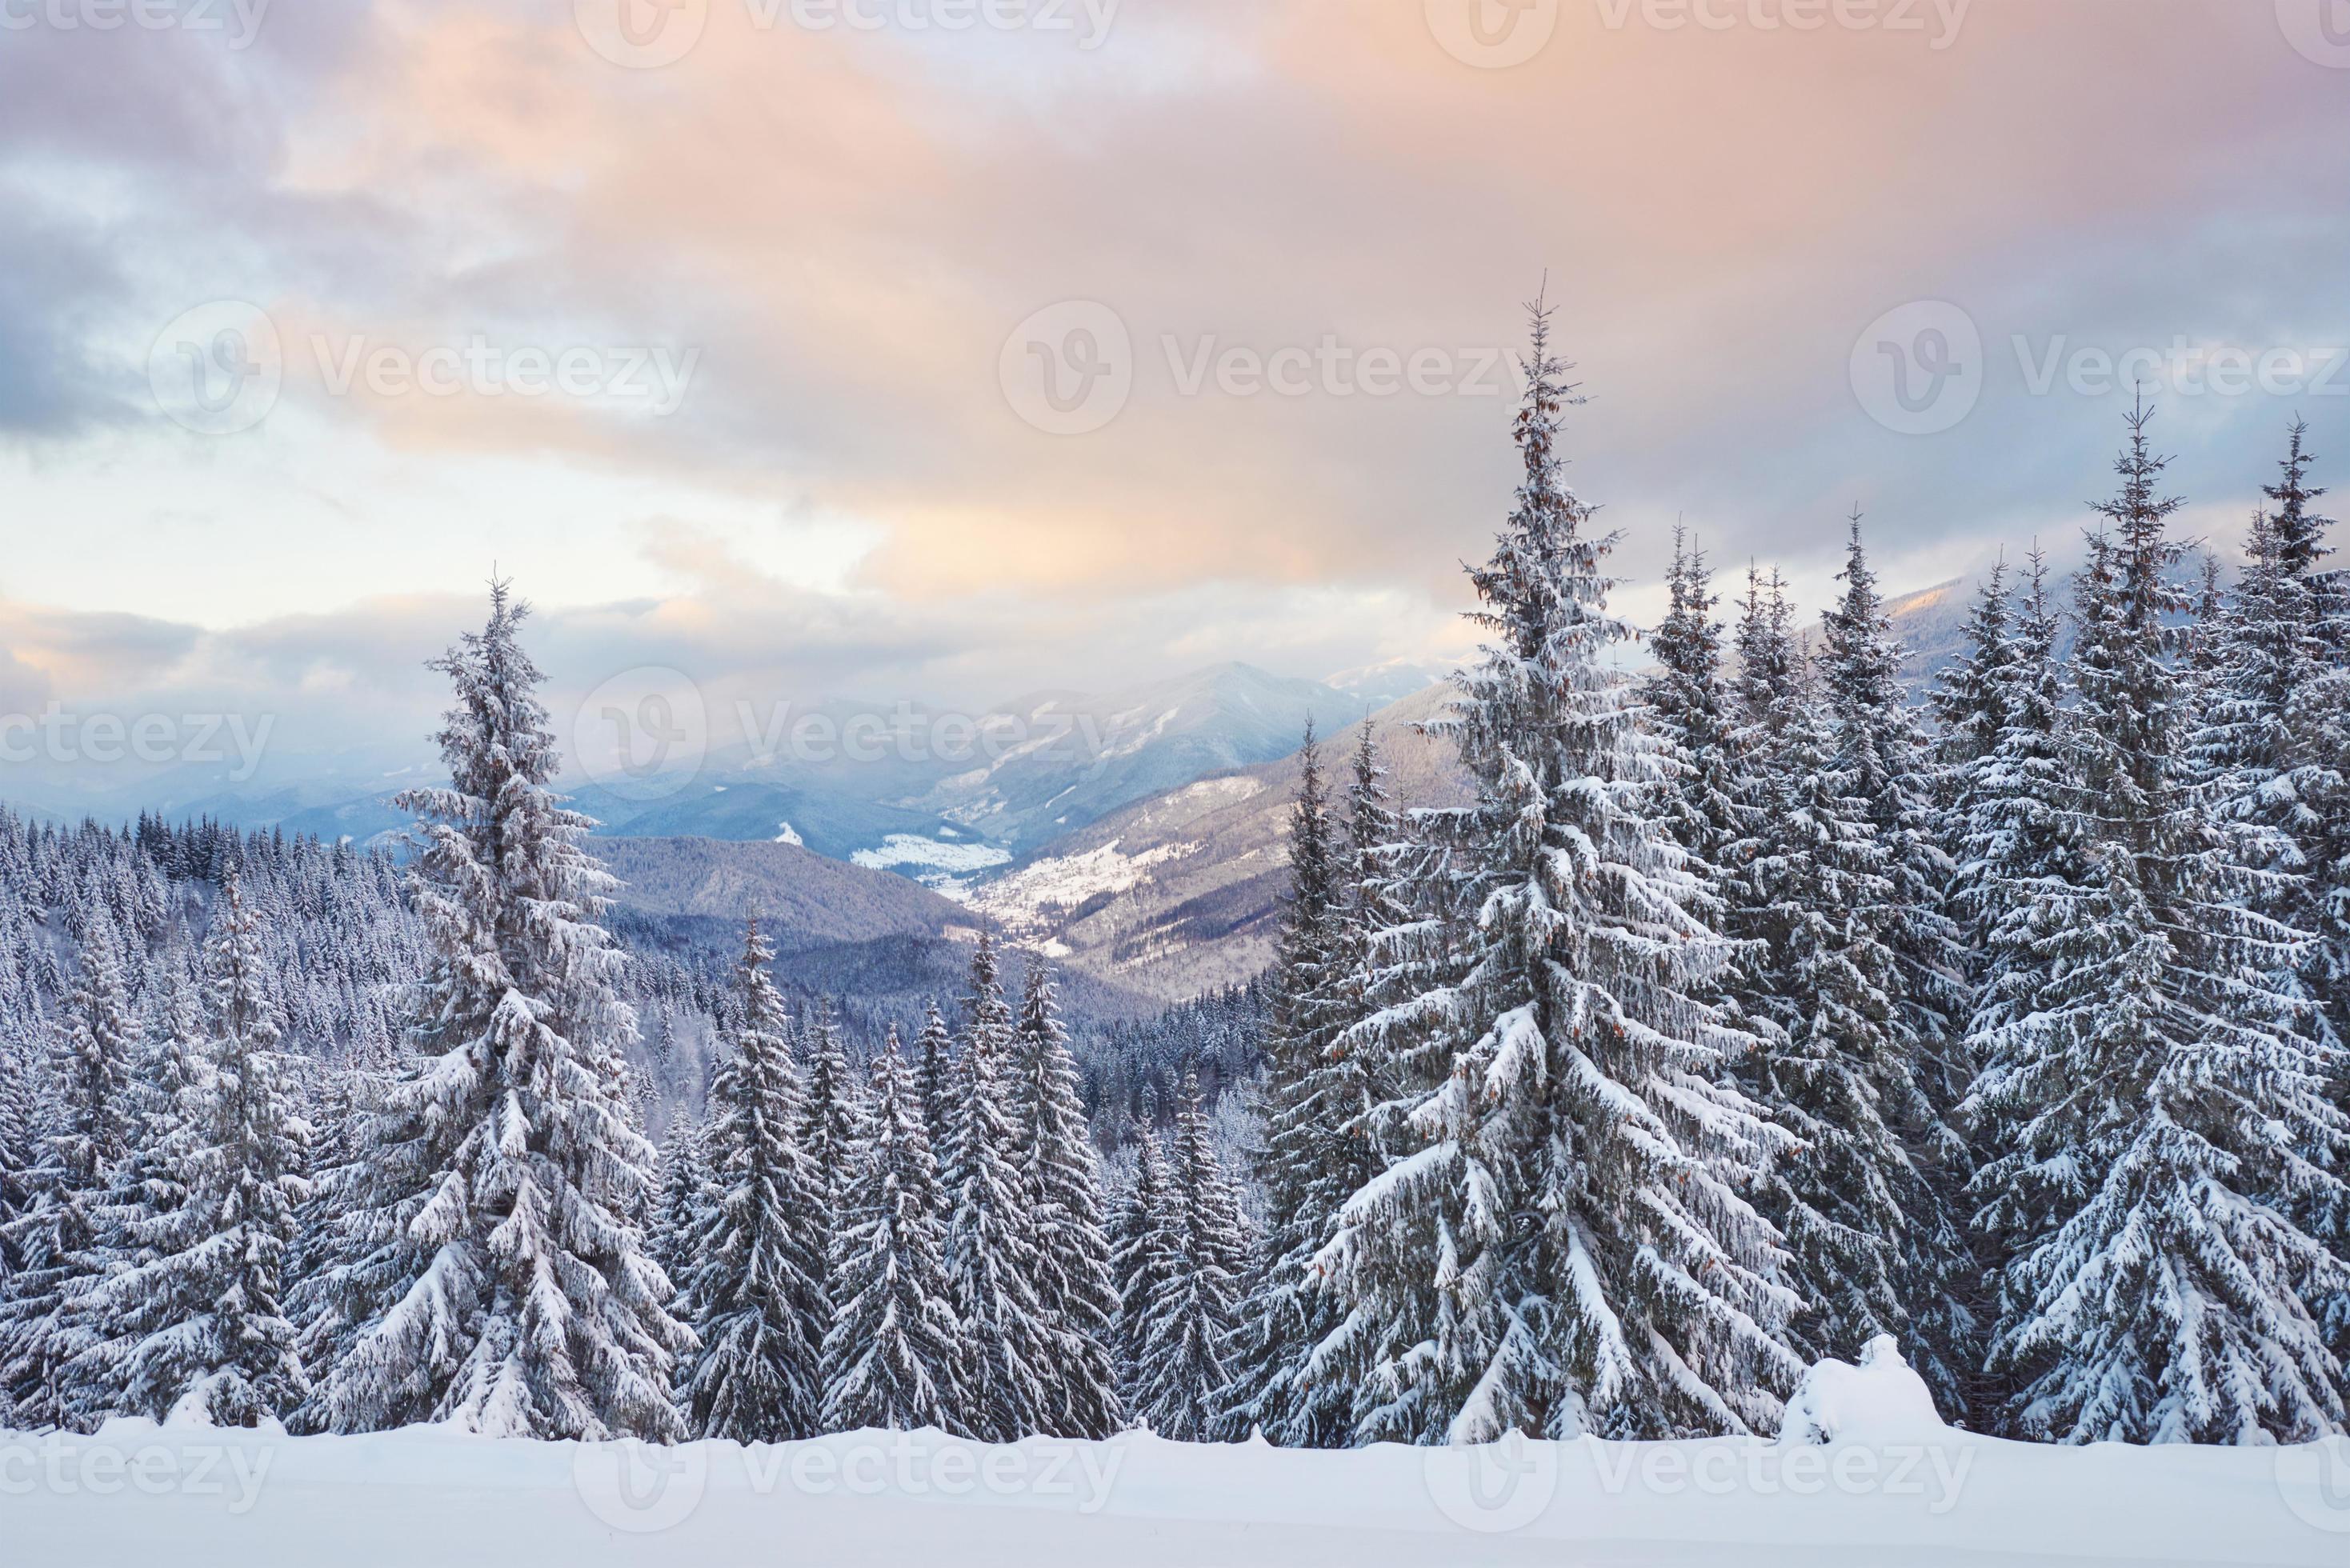 majestätische weiße Fichten, die im Sonnenlicht leuchten. malerische und wunderschöne winterliche Szene. Lage Ort Karpaten-Nationalpark, Ukraine, Europa. alpen skigebiet foto